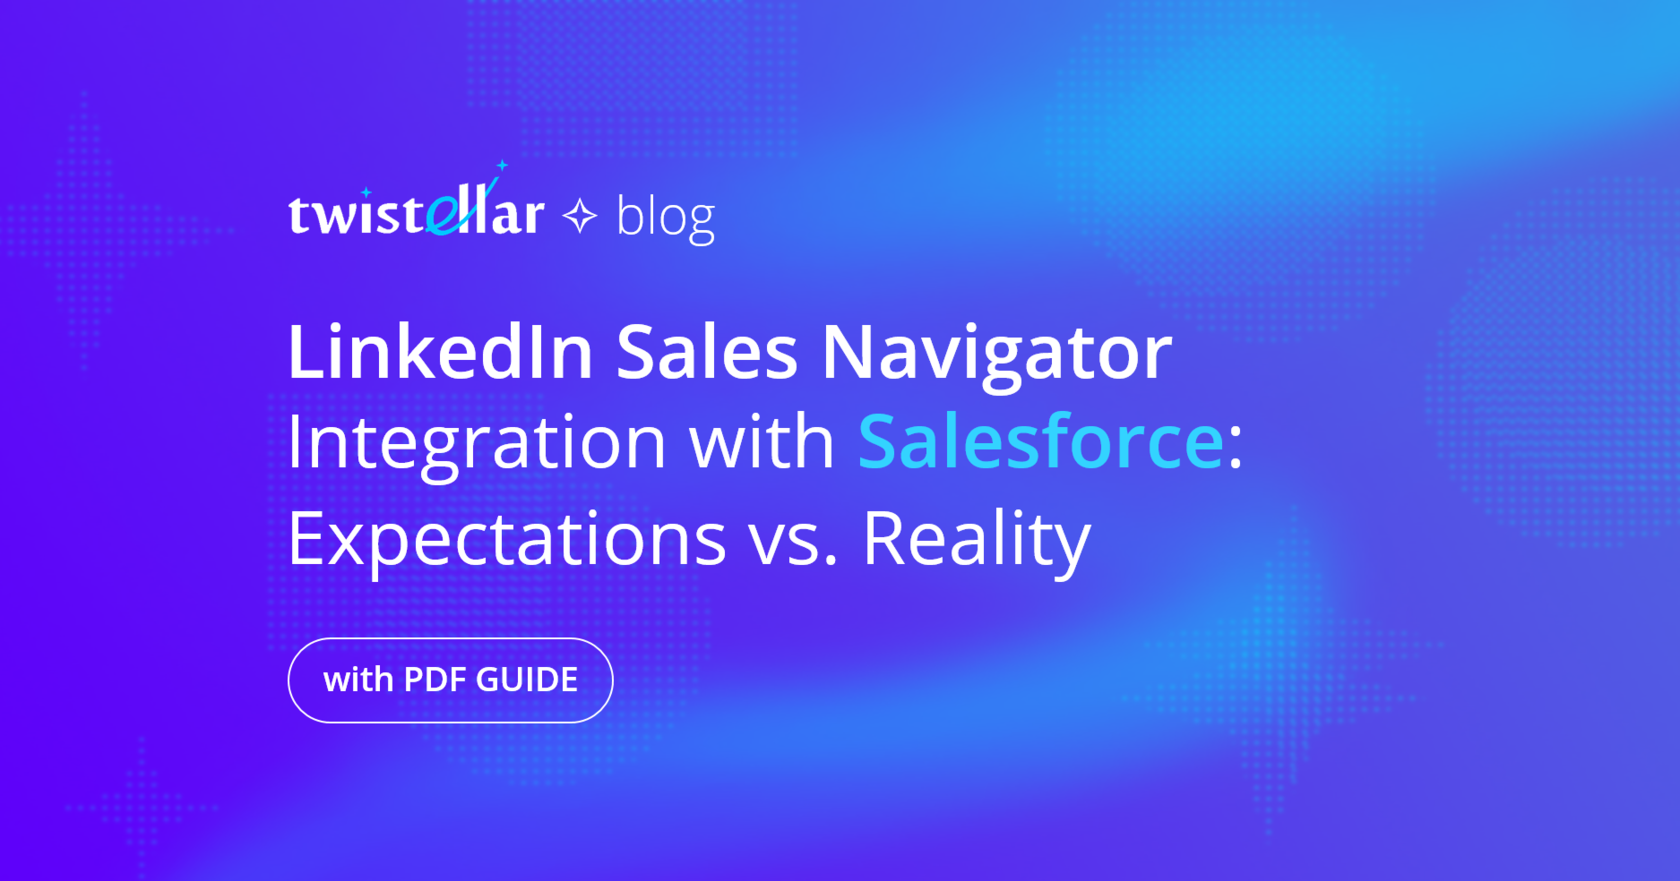 linkedin sales navigator integration with salesforce